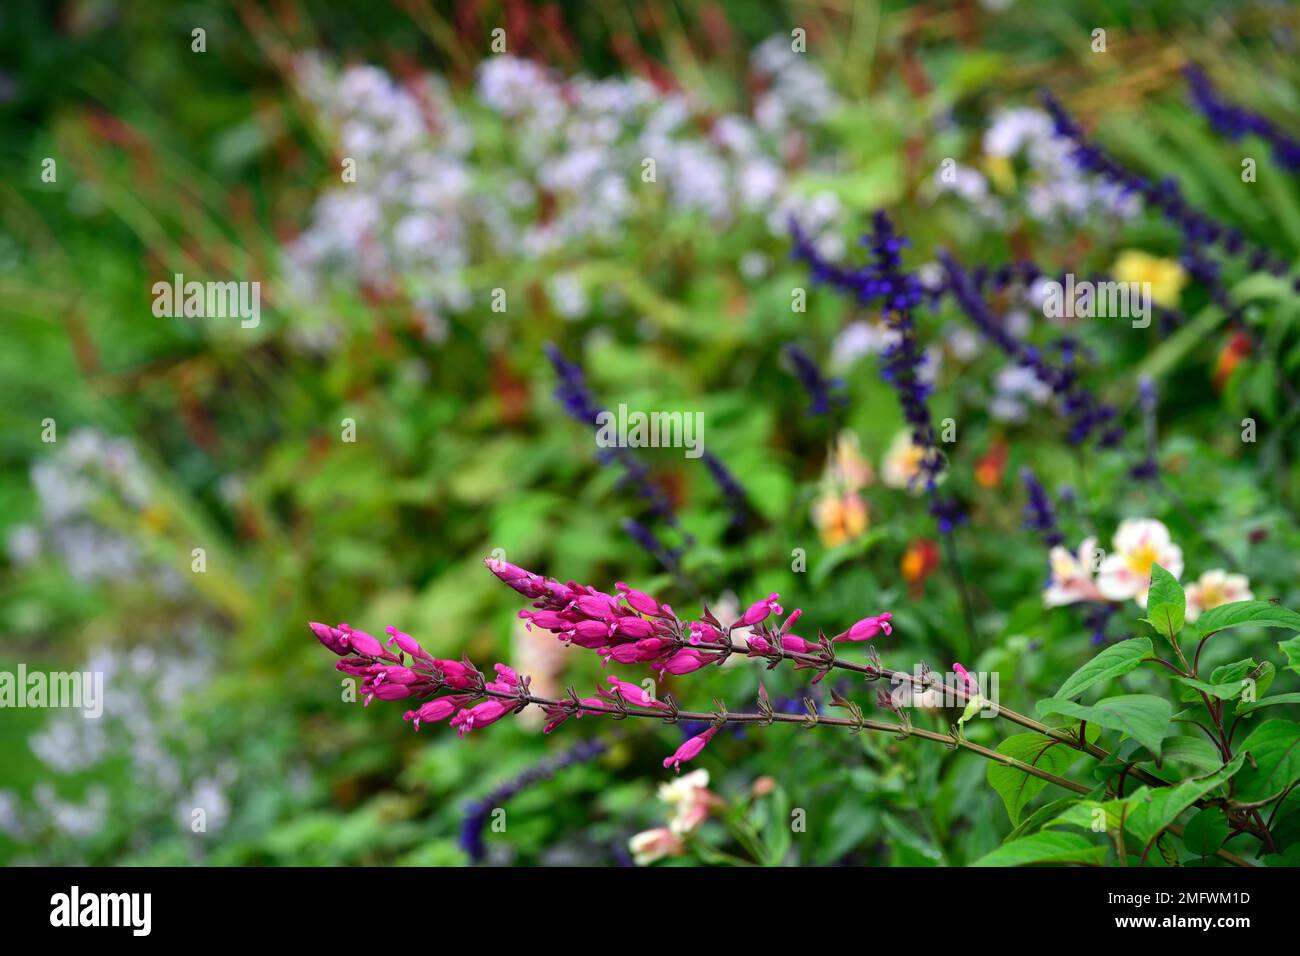 Salvia involucrata, rosiger Salbei Bethellii, Salvien, violette rote Blumen, blühender Salbei, Garten, Gärten, Blumenblumen Stockfoto